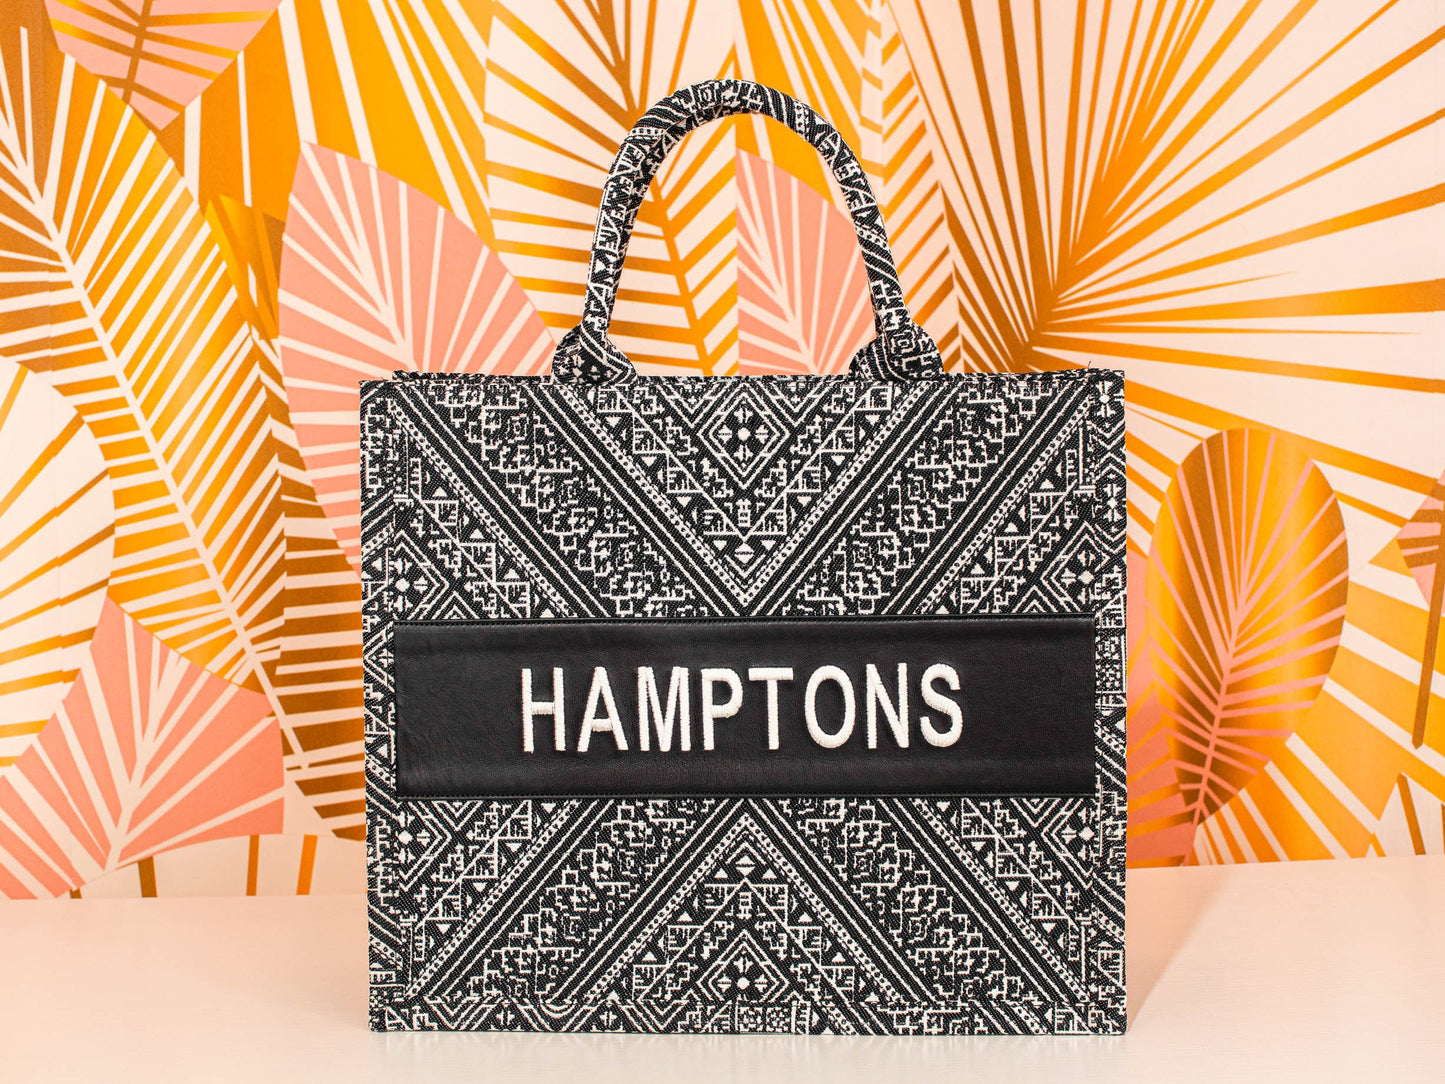 Large Tote CD Hamptons - Premium Bag from Marina St. Barth - Just $197.50! Shop now at Marina St Barth